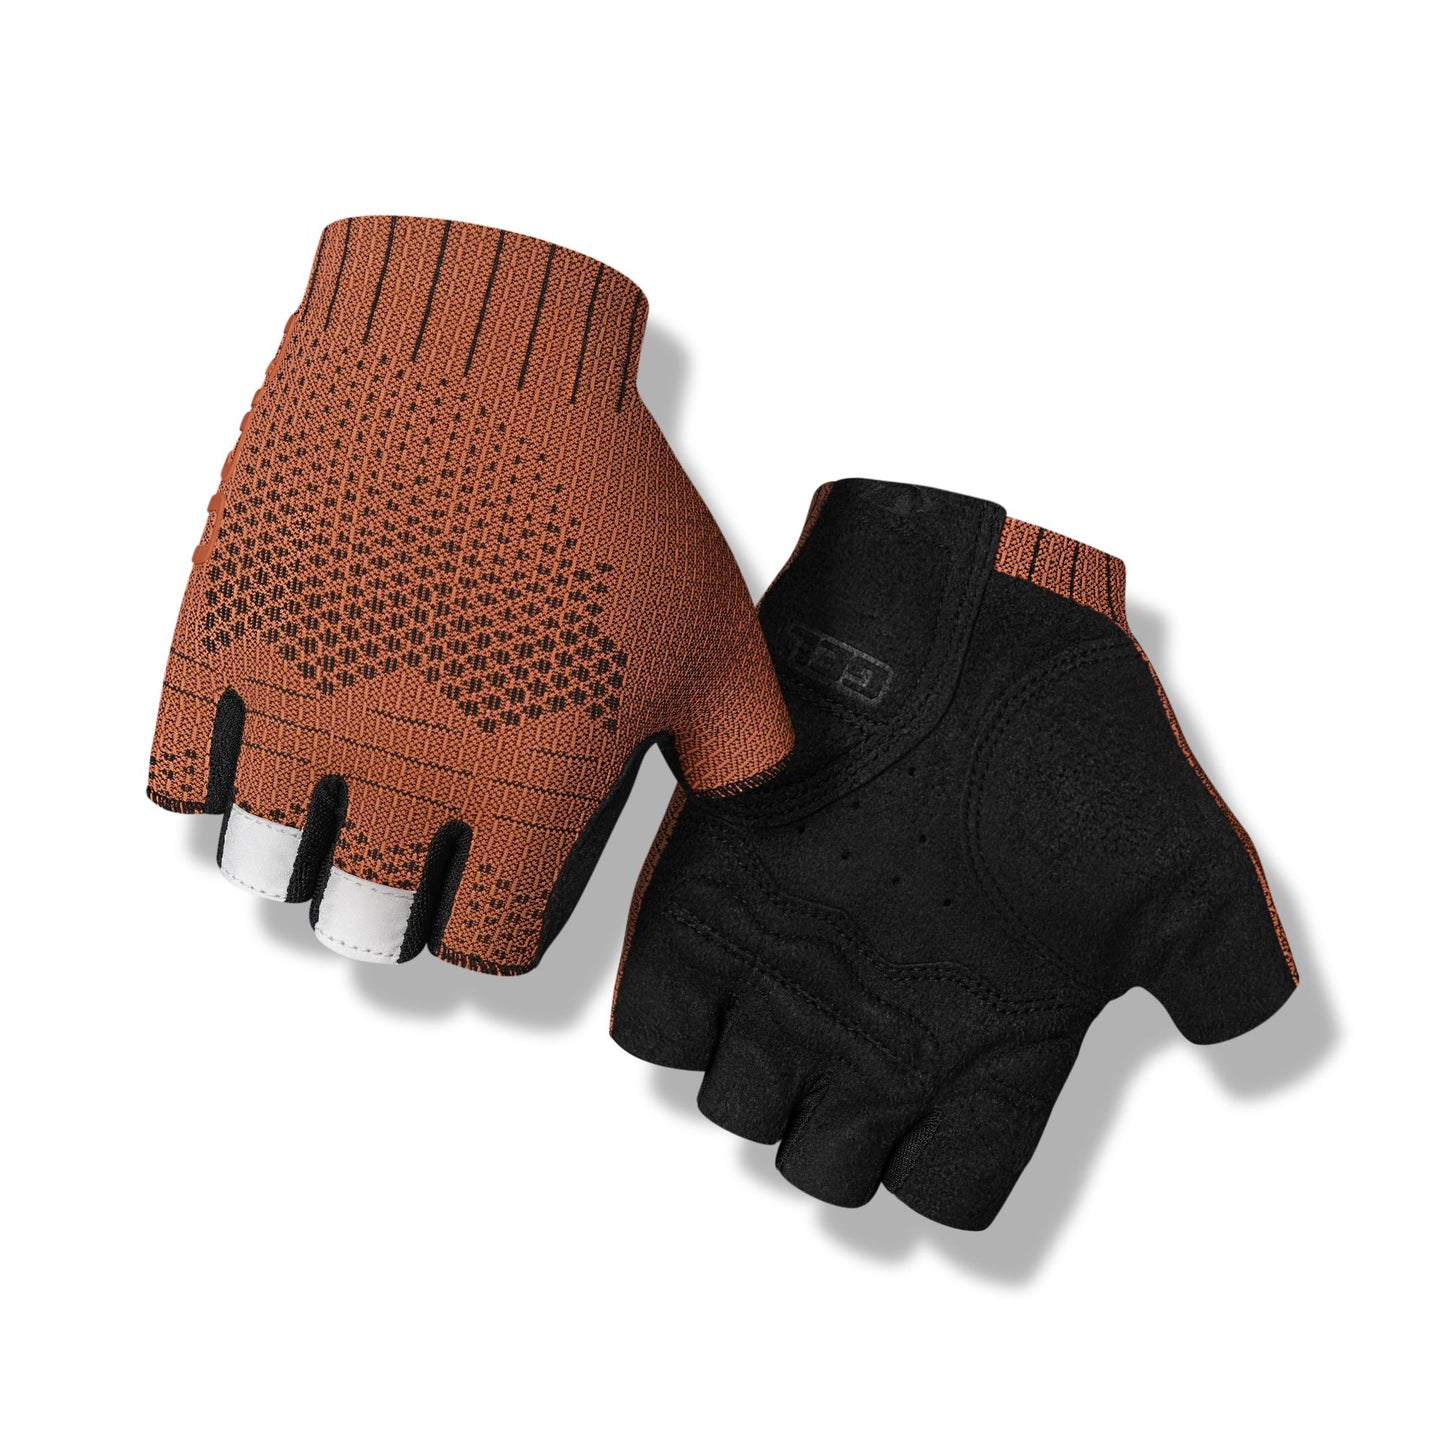 Giro Men's Xnetic Road Glove Trim Red Bike Gloves